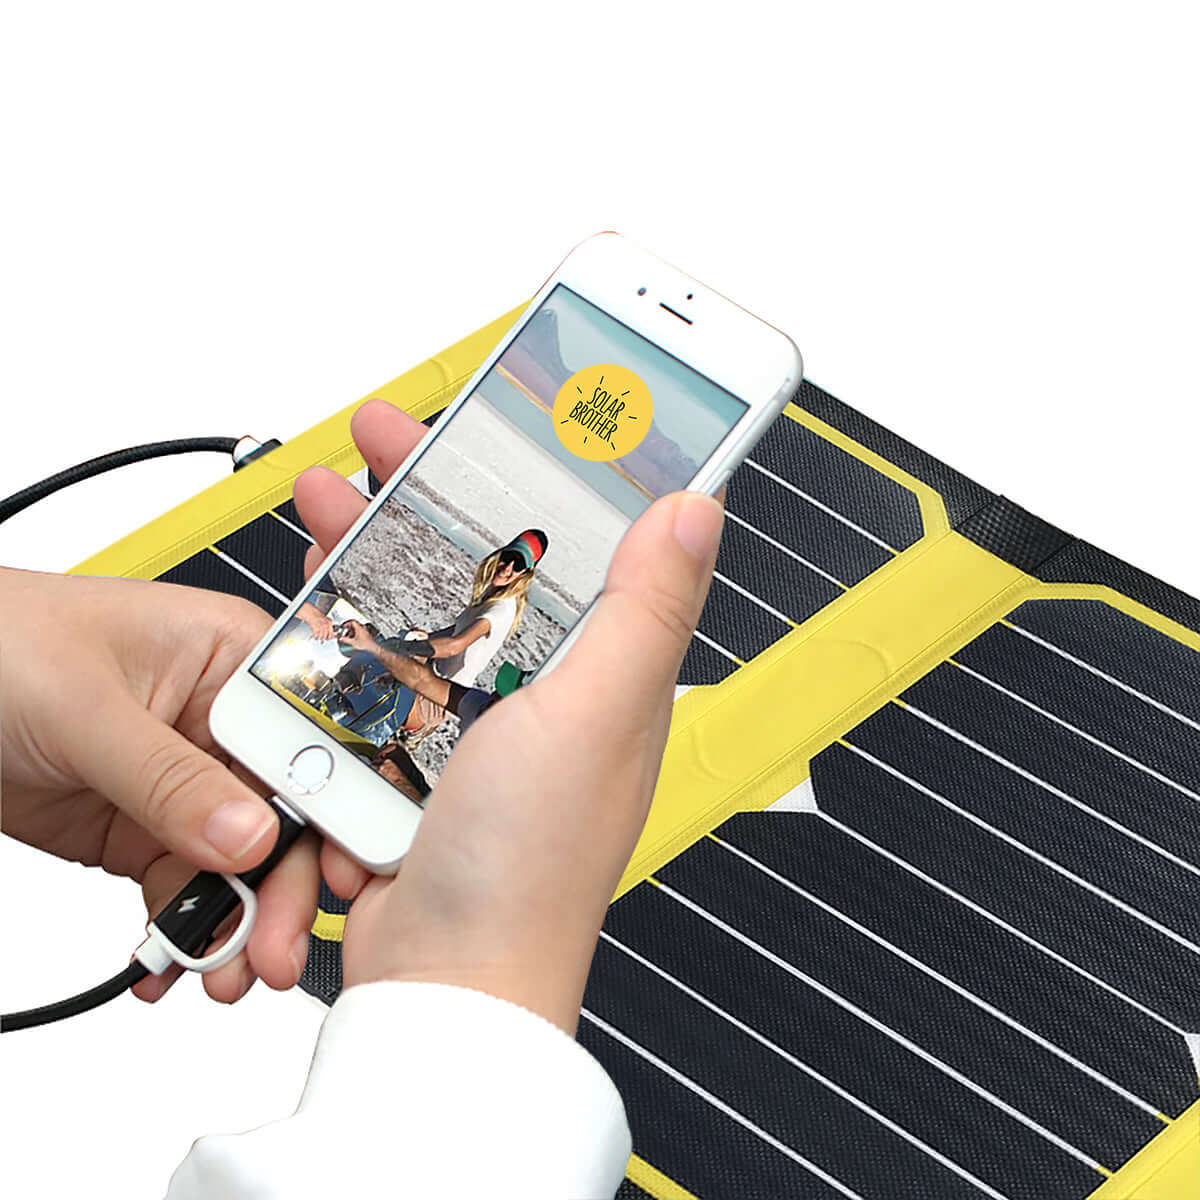 Chargeur solaire pour smartphone. Partout en pleine nature.